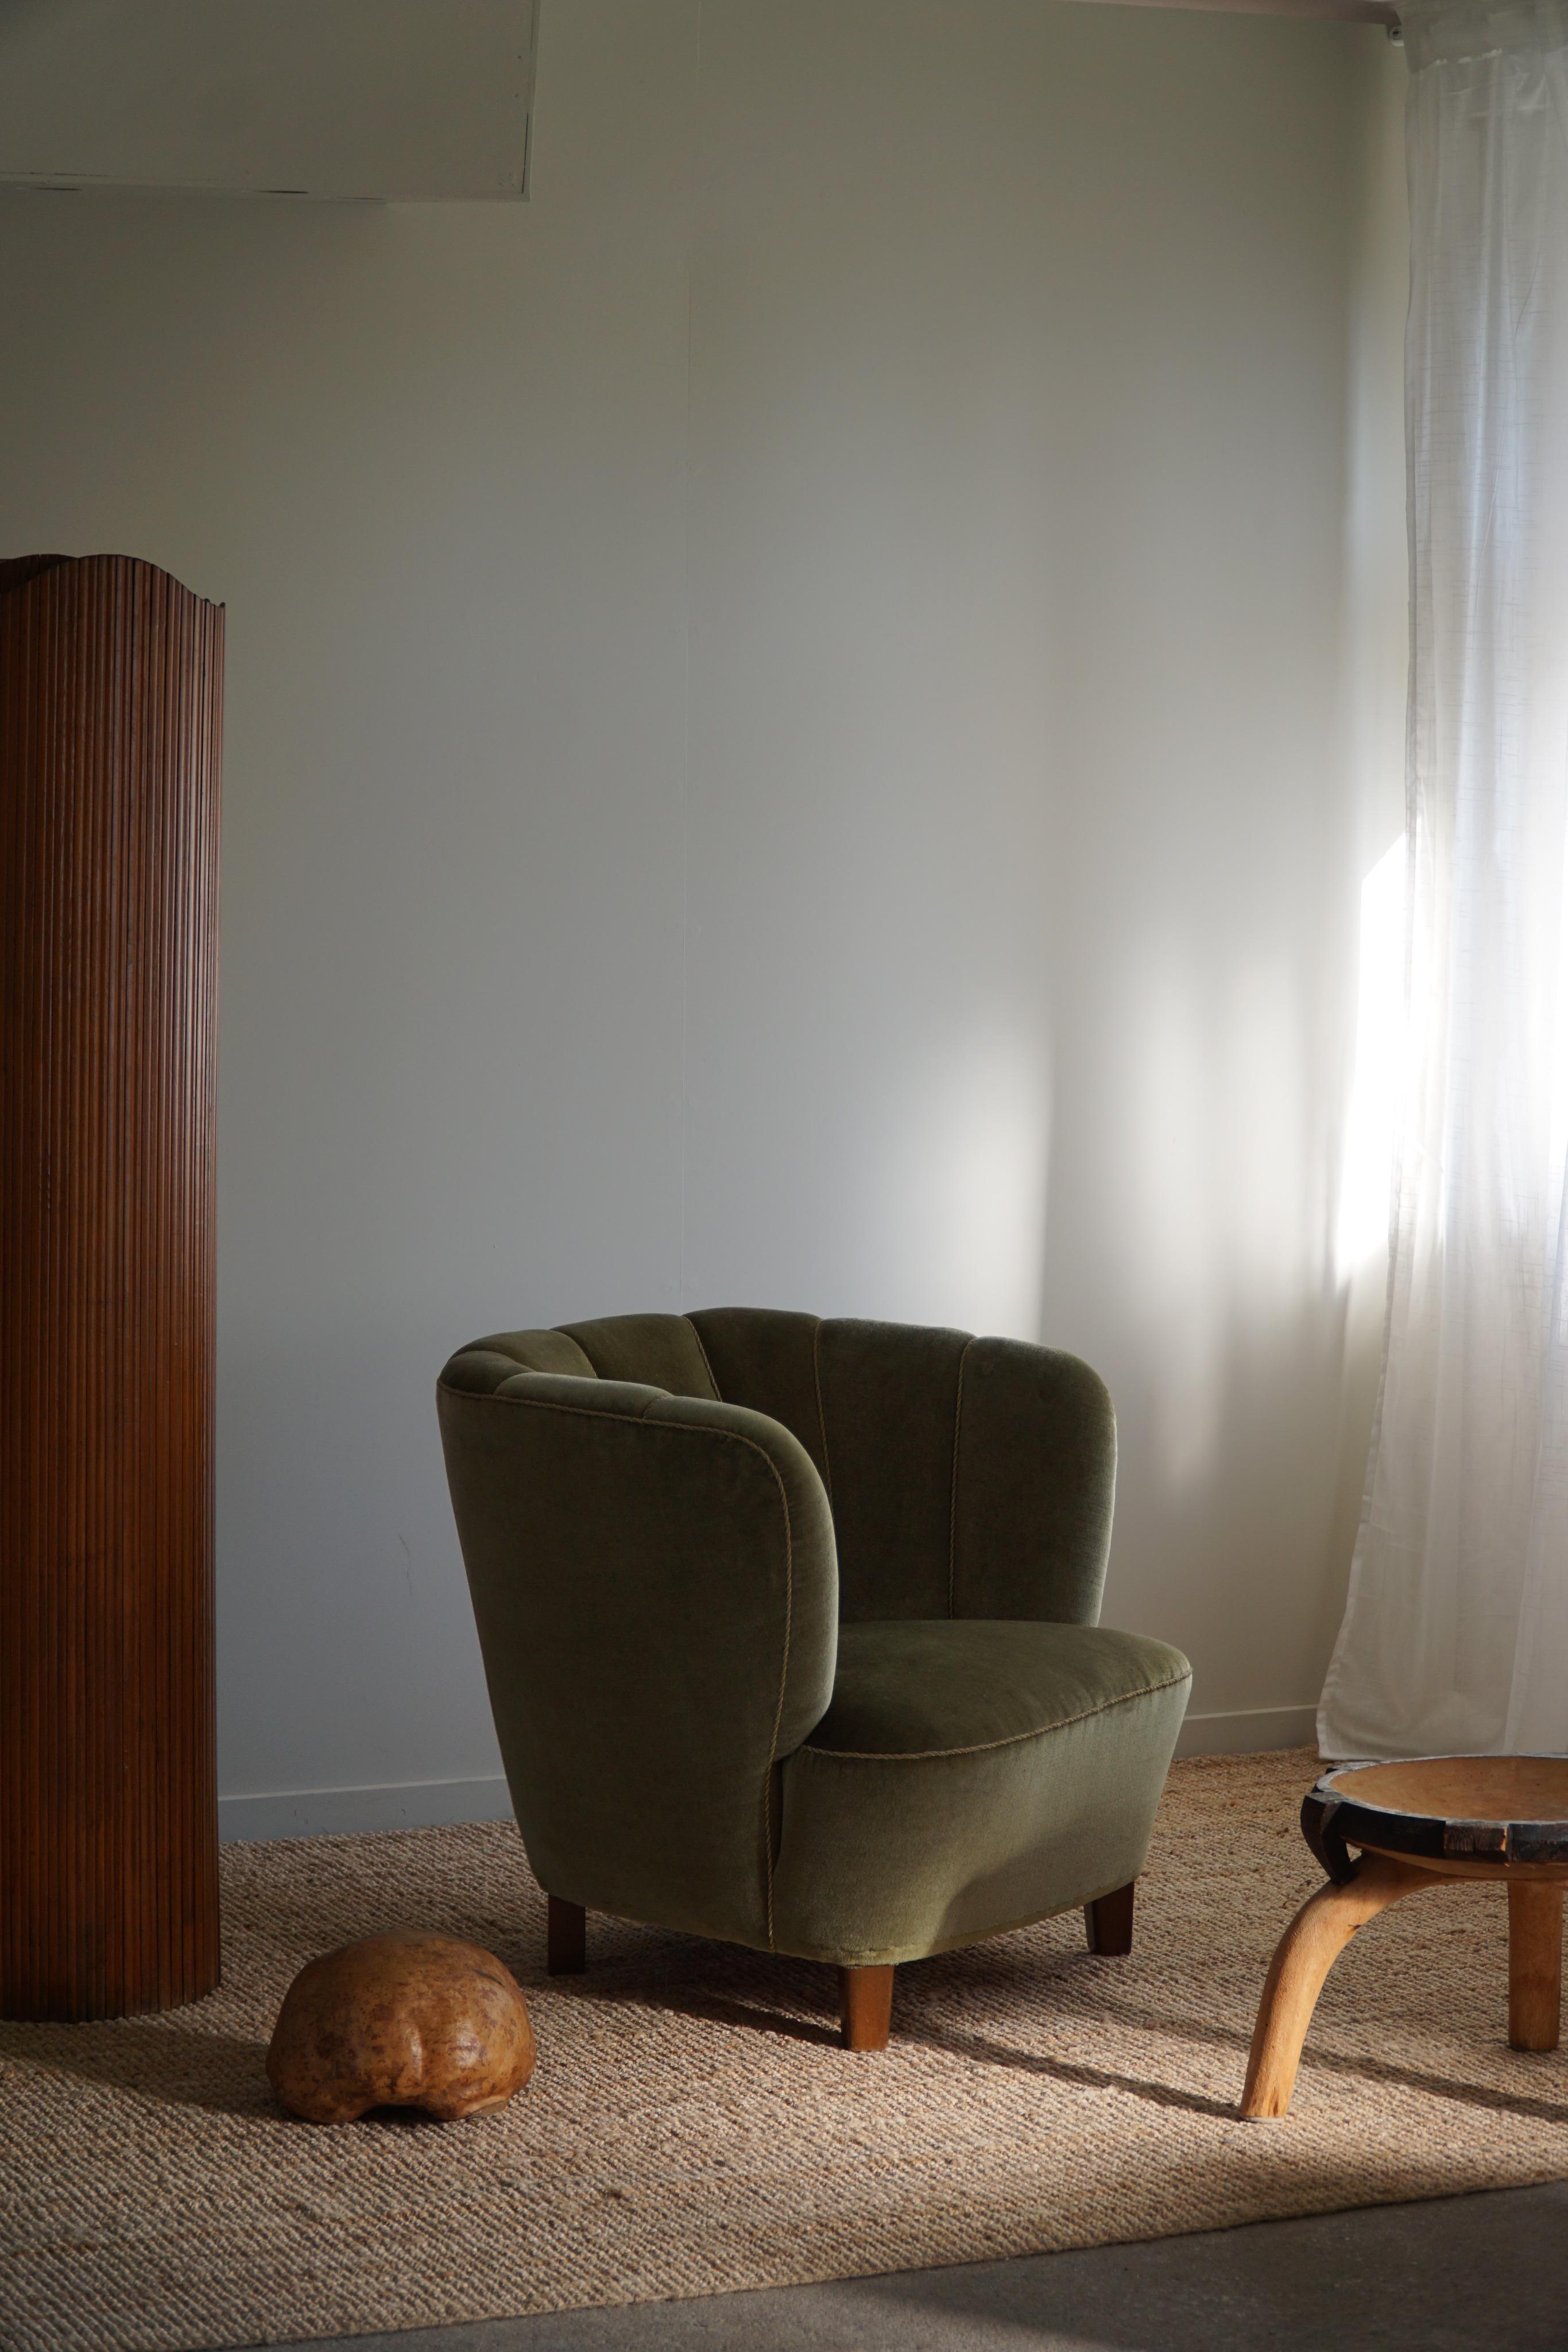 Ein seltener bequemer Sessel mit schönen Rundungen. Origineller Stoff in schöner grüner Farbe, der die natürlichen Materialien ergänzt. Hergestellt von einem erfahrenen dänischen Tischler in den 1940er Jahren. Dieser schöne Stuhl ist im Stil des